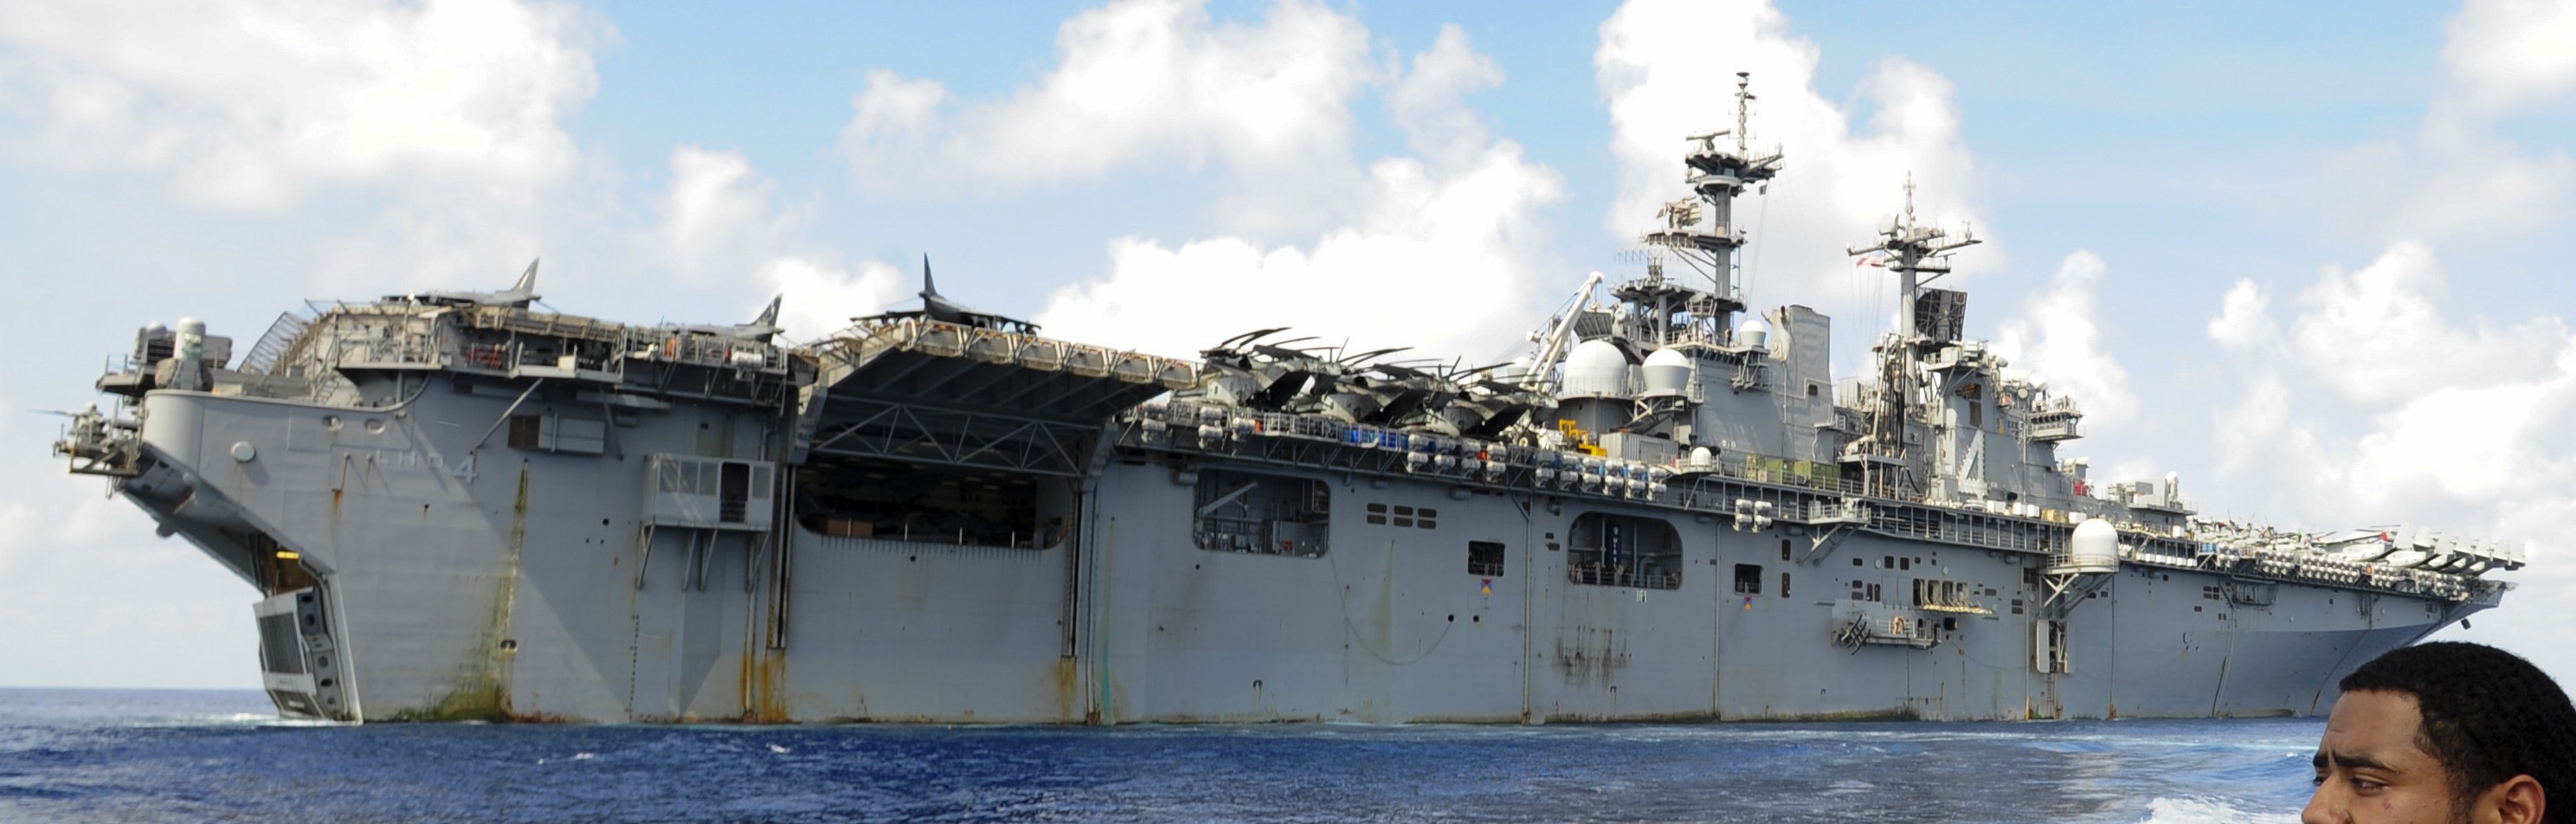 lhd-4 uss boxer wasp class amphibious assault ship dock landing us navy marines vmm-166 112